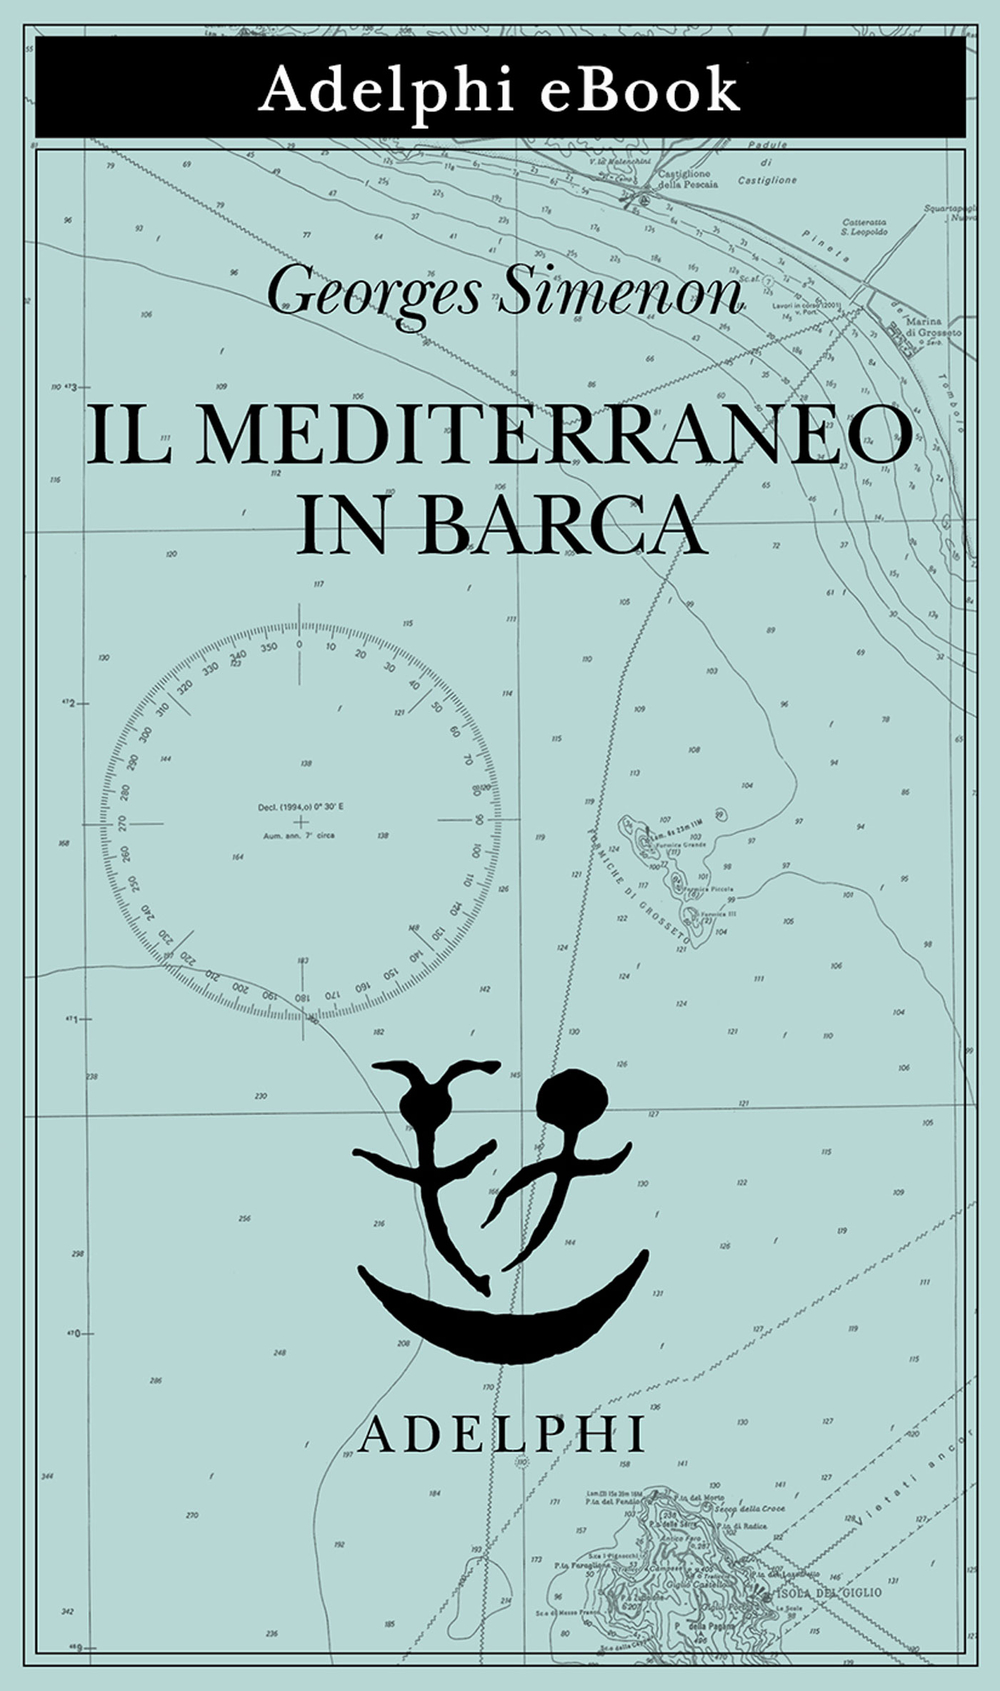 Il Mediterraneo in barca - Georges Simenon